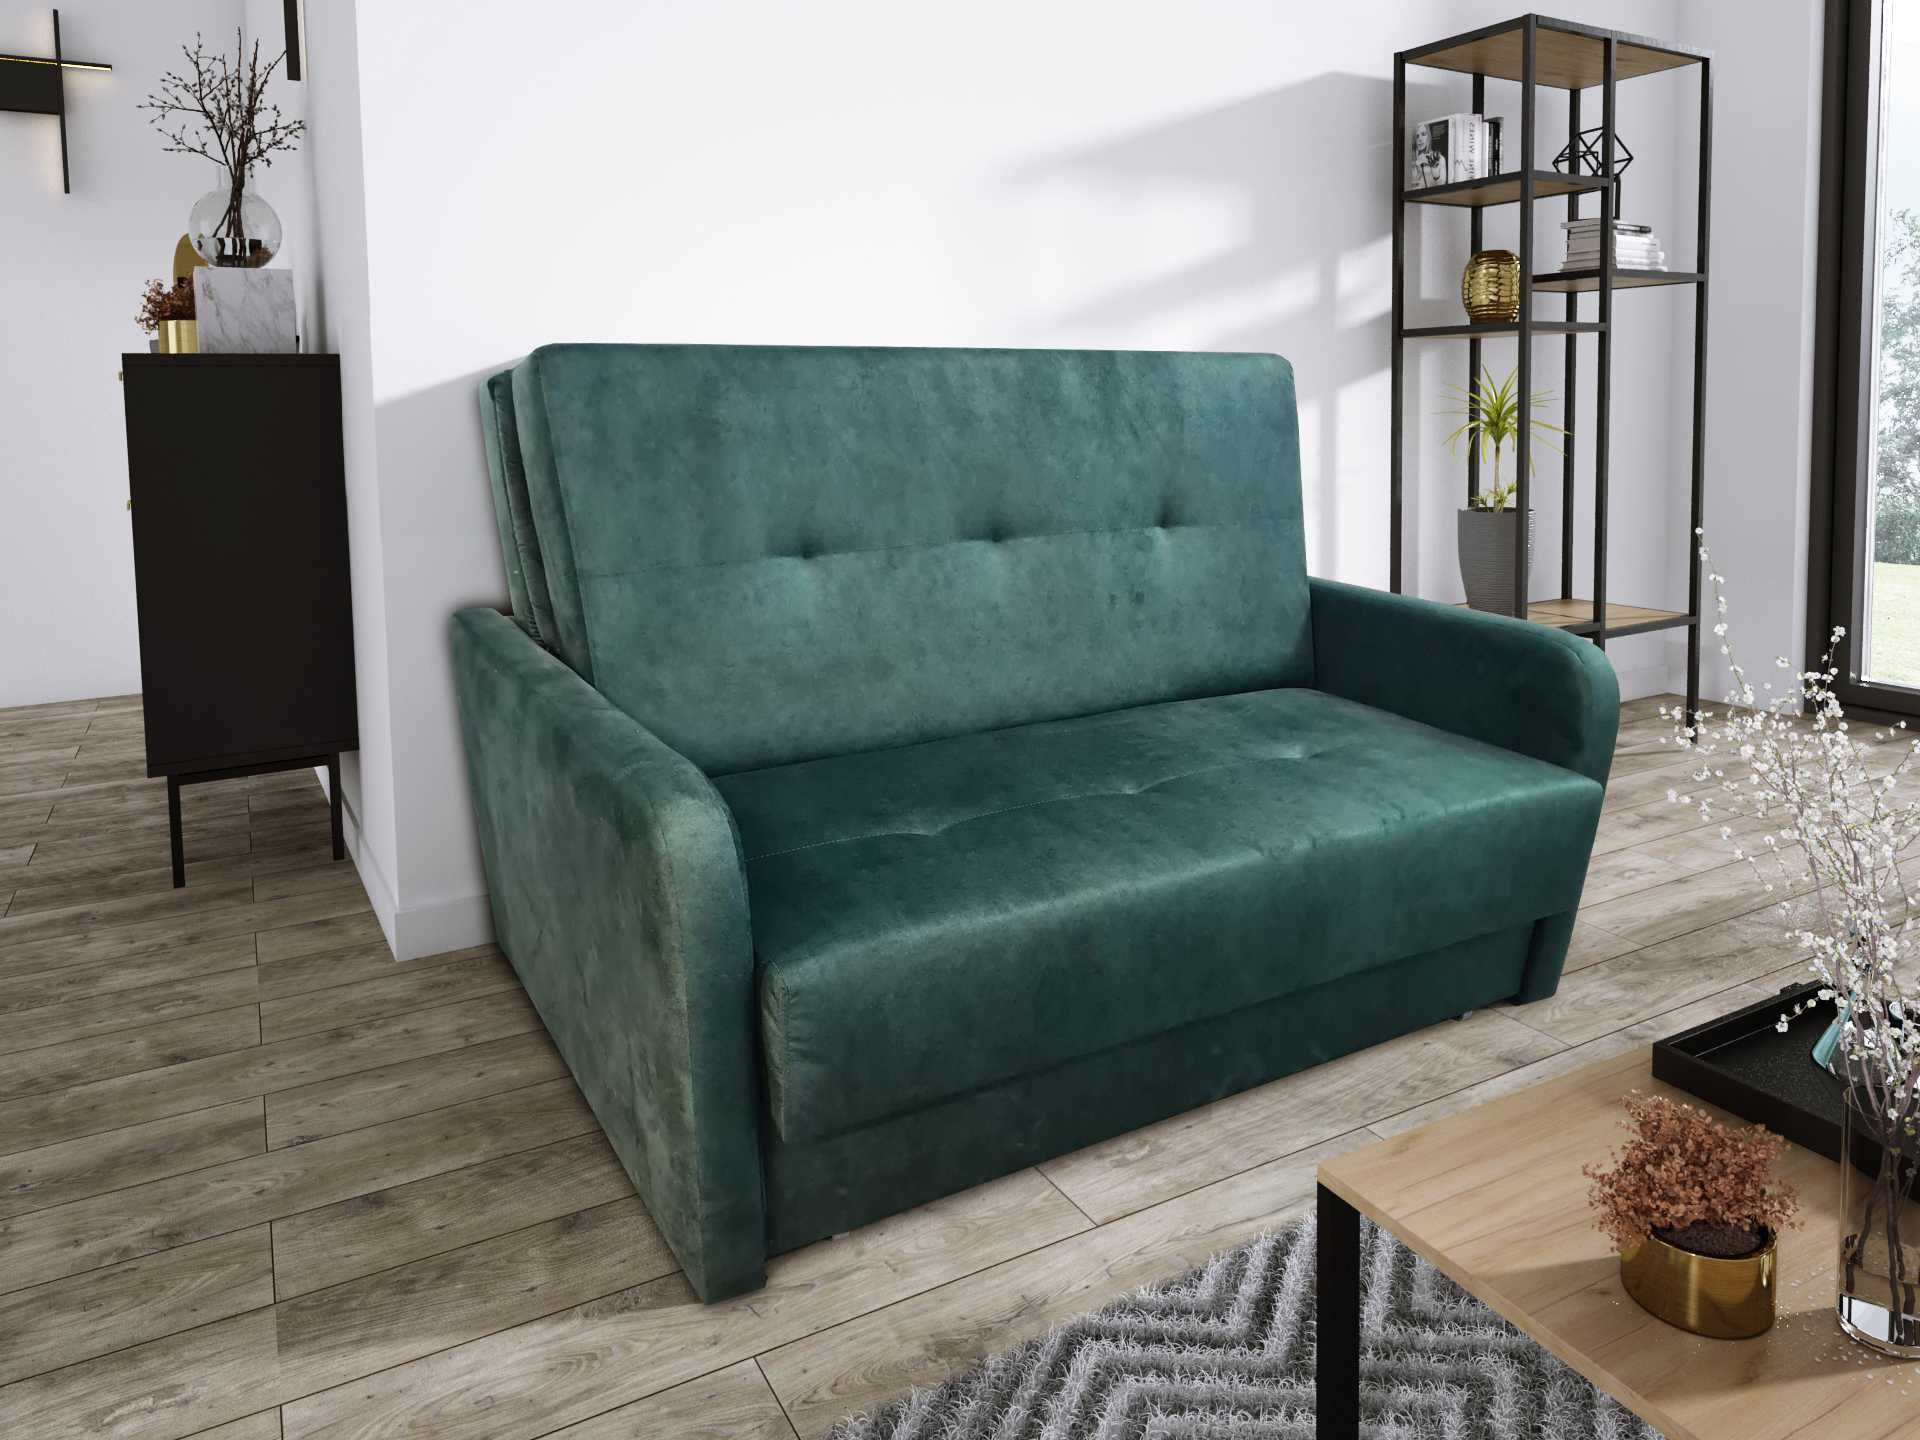 NOWOŚĆ/AGATA AMERYKANKA, sofa kanapa rozkładana / WIELE kolorów